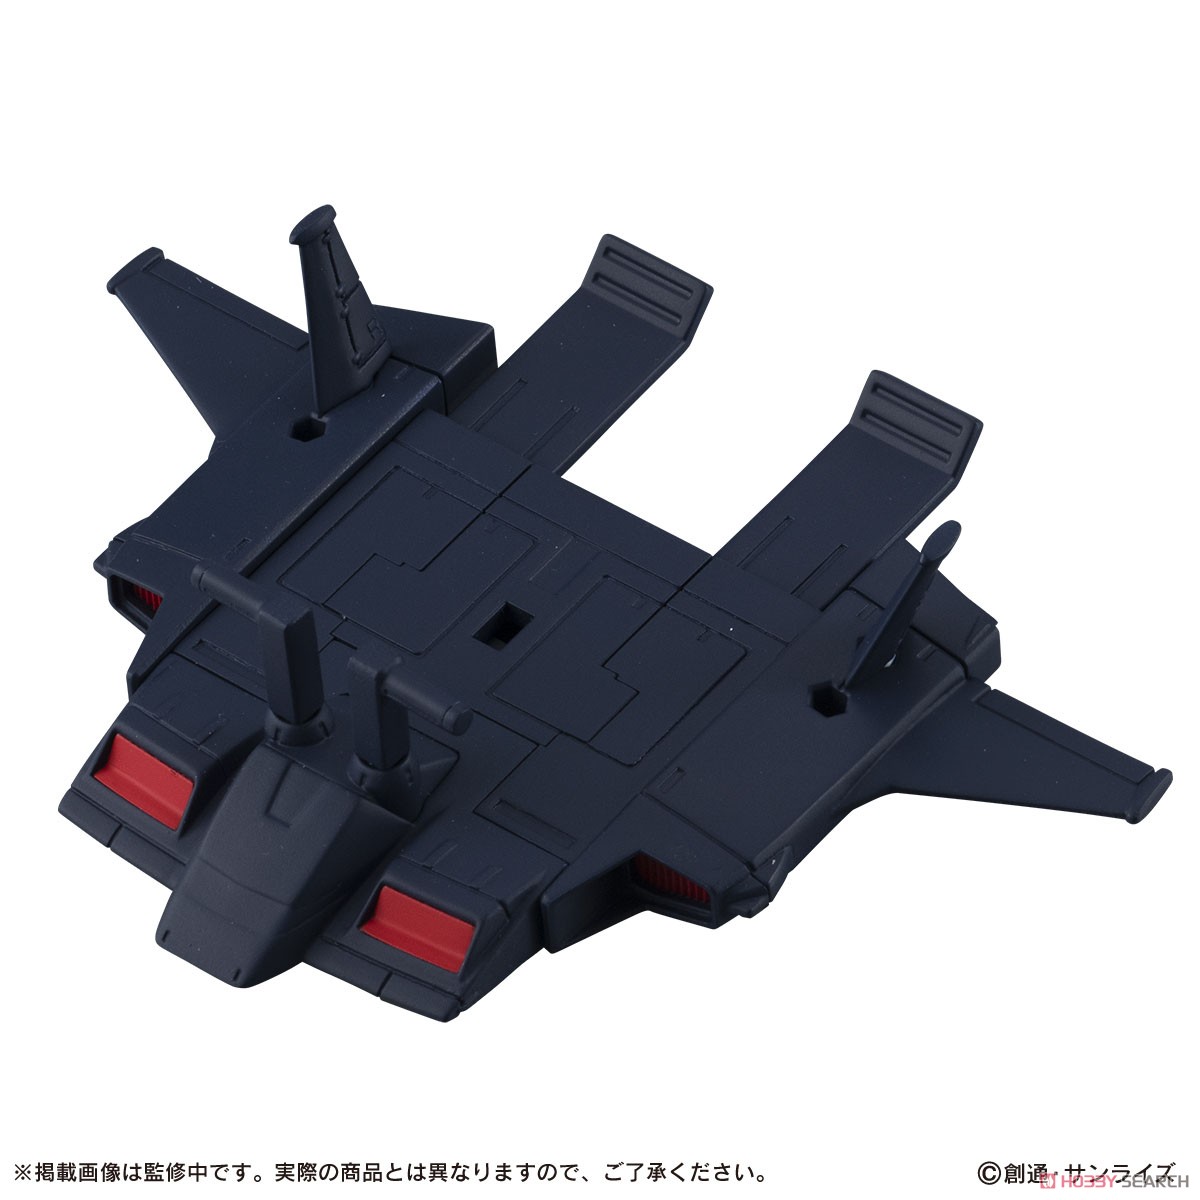 機動戦士ガンダム『MOBILE SUIT ENSEMBLE22』デフォルメ可動フィギュア 10個入りBOX-004